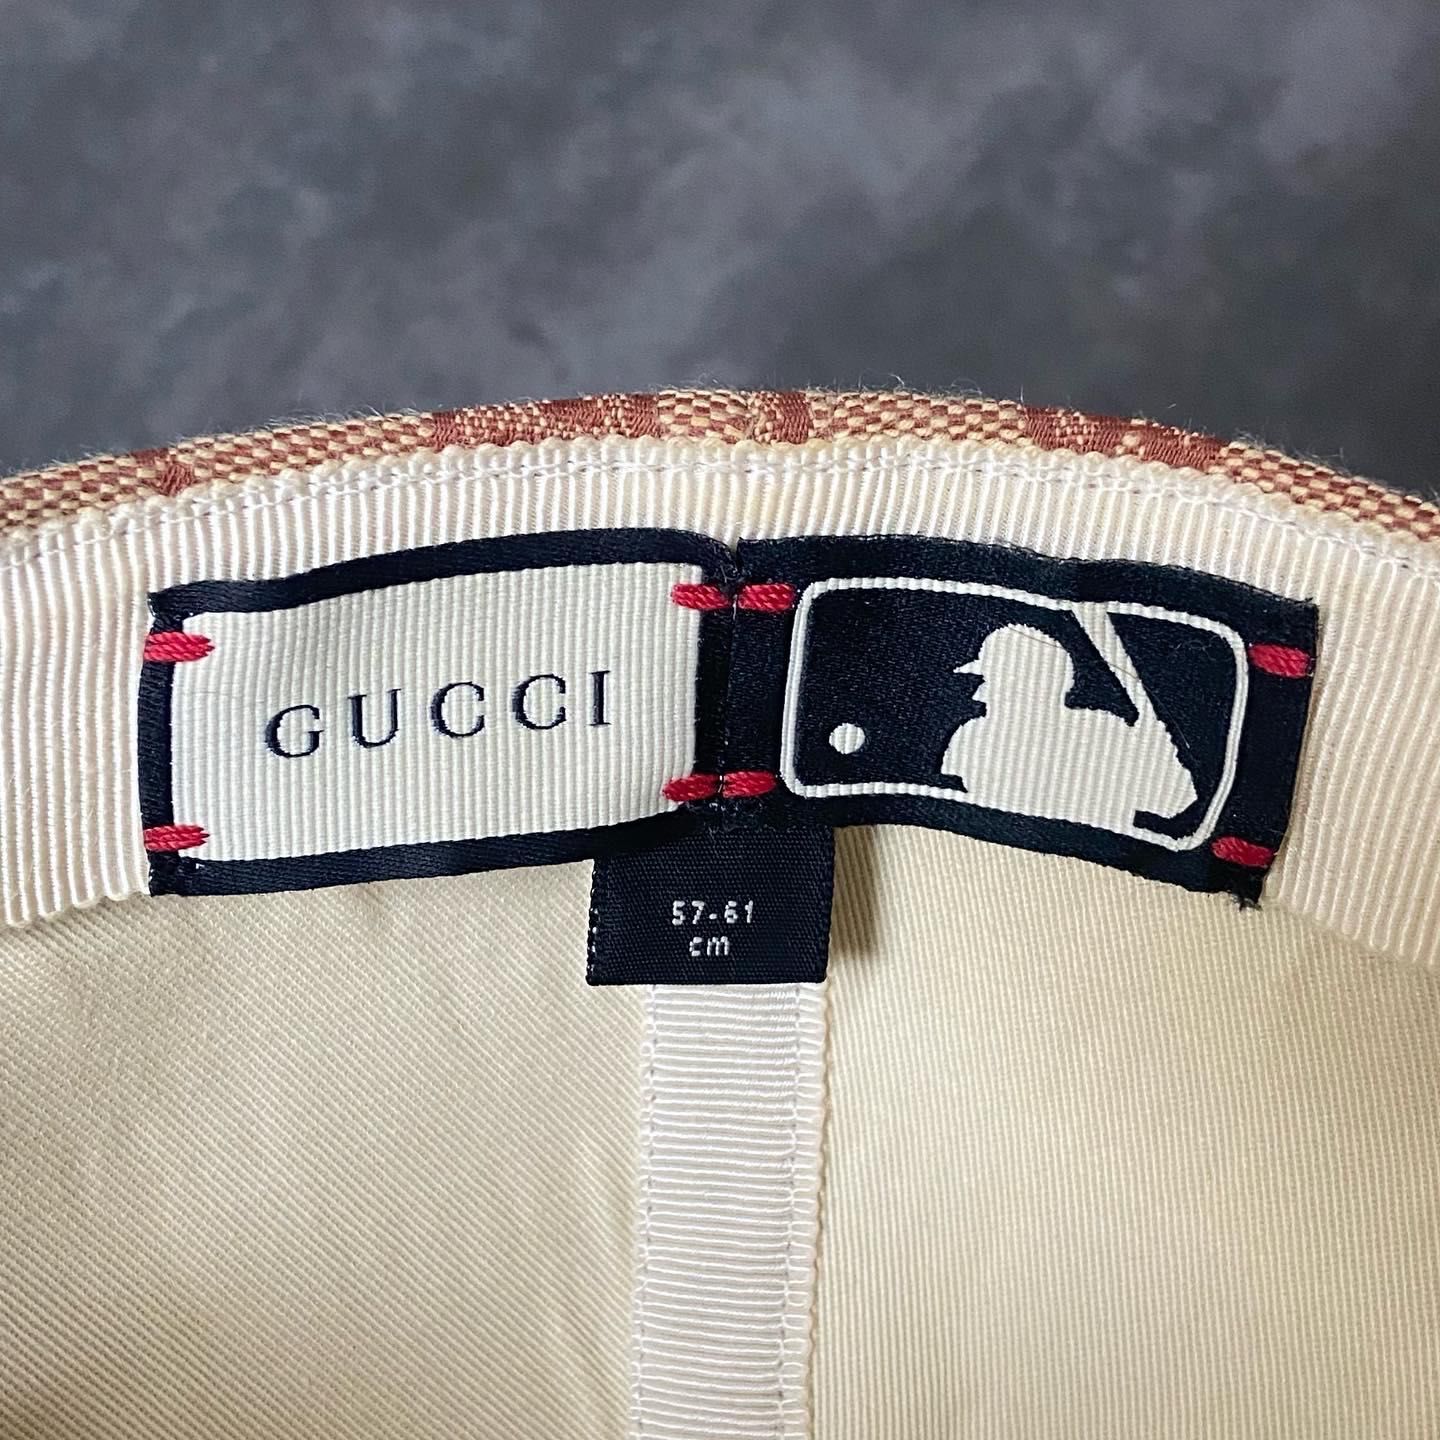 Gucci MLB LA Dodgers baseball cap